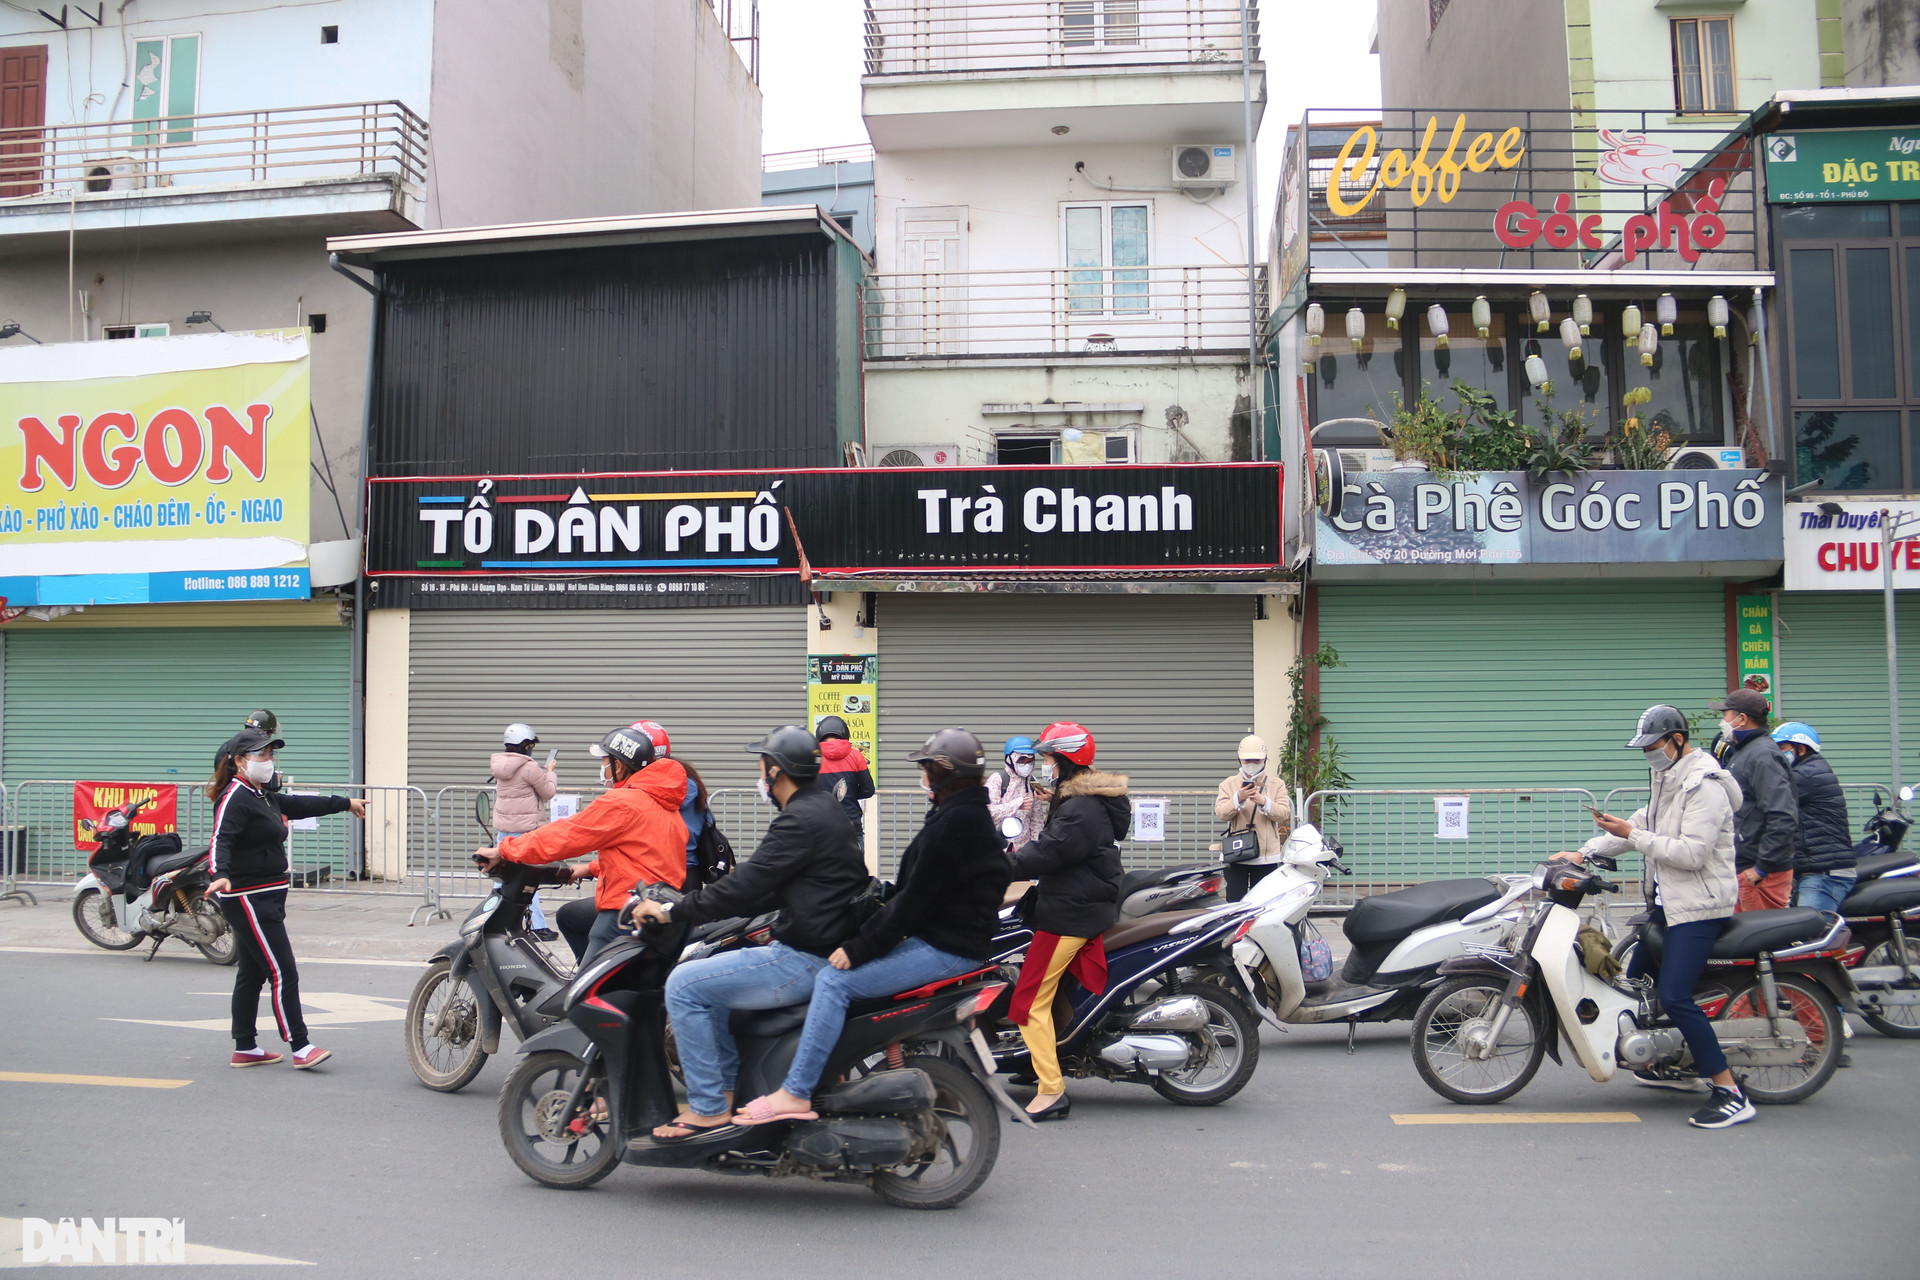 Hà Nội: Đông nghịt người quét QR Code tại ổ dịch Phú Đô để ra vào phường - 9